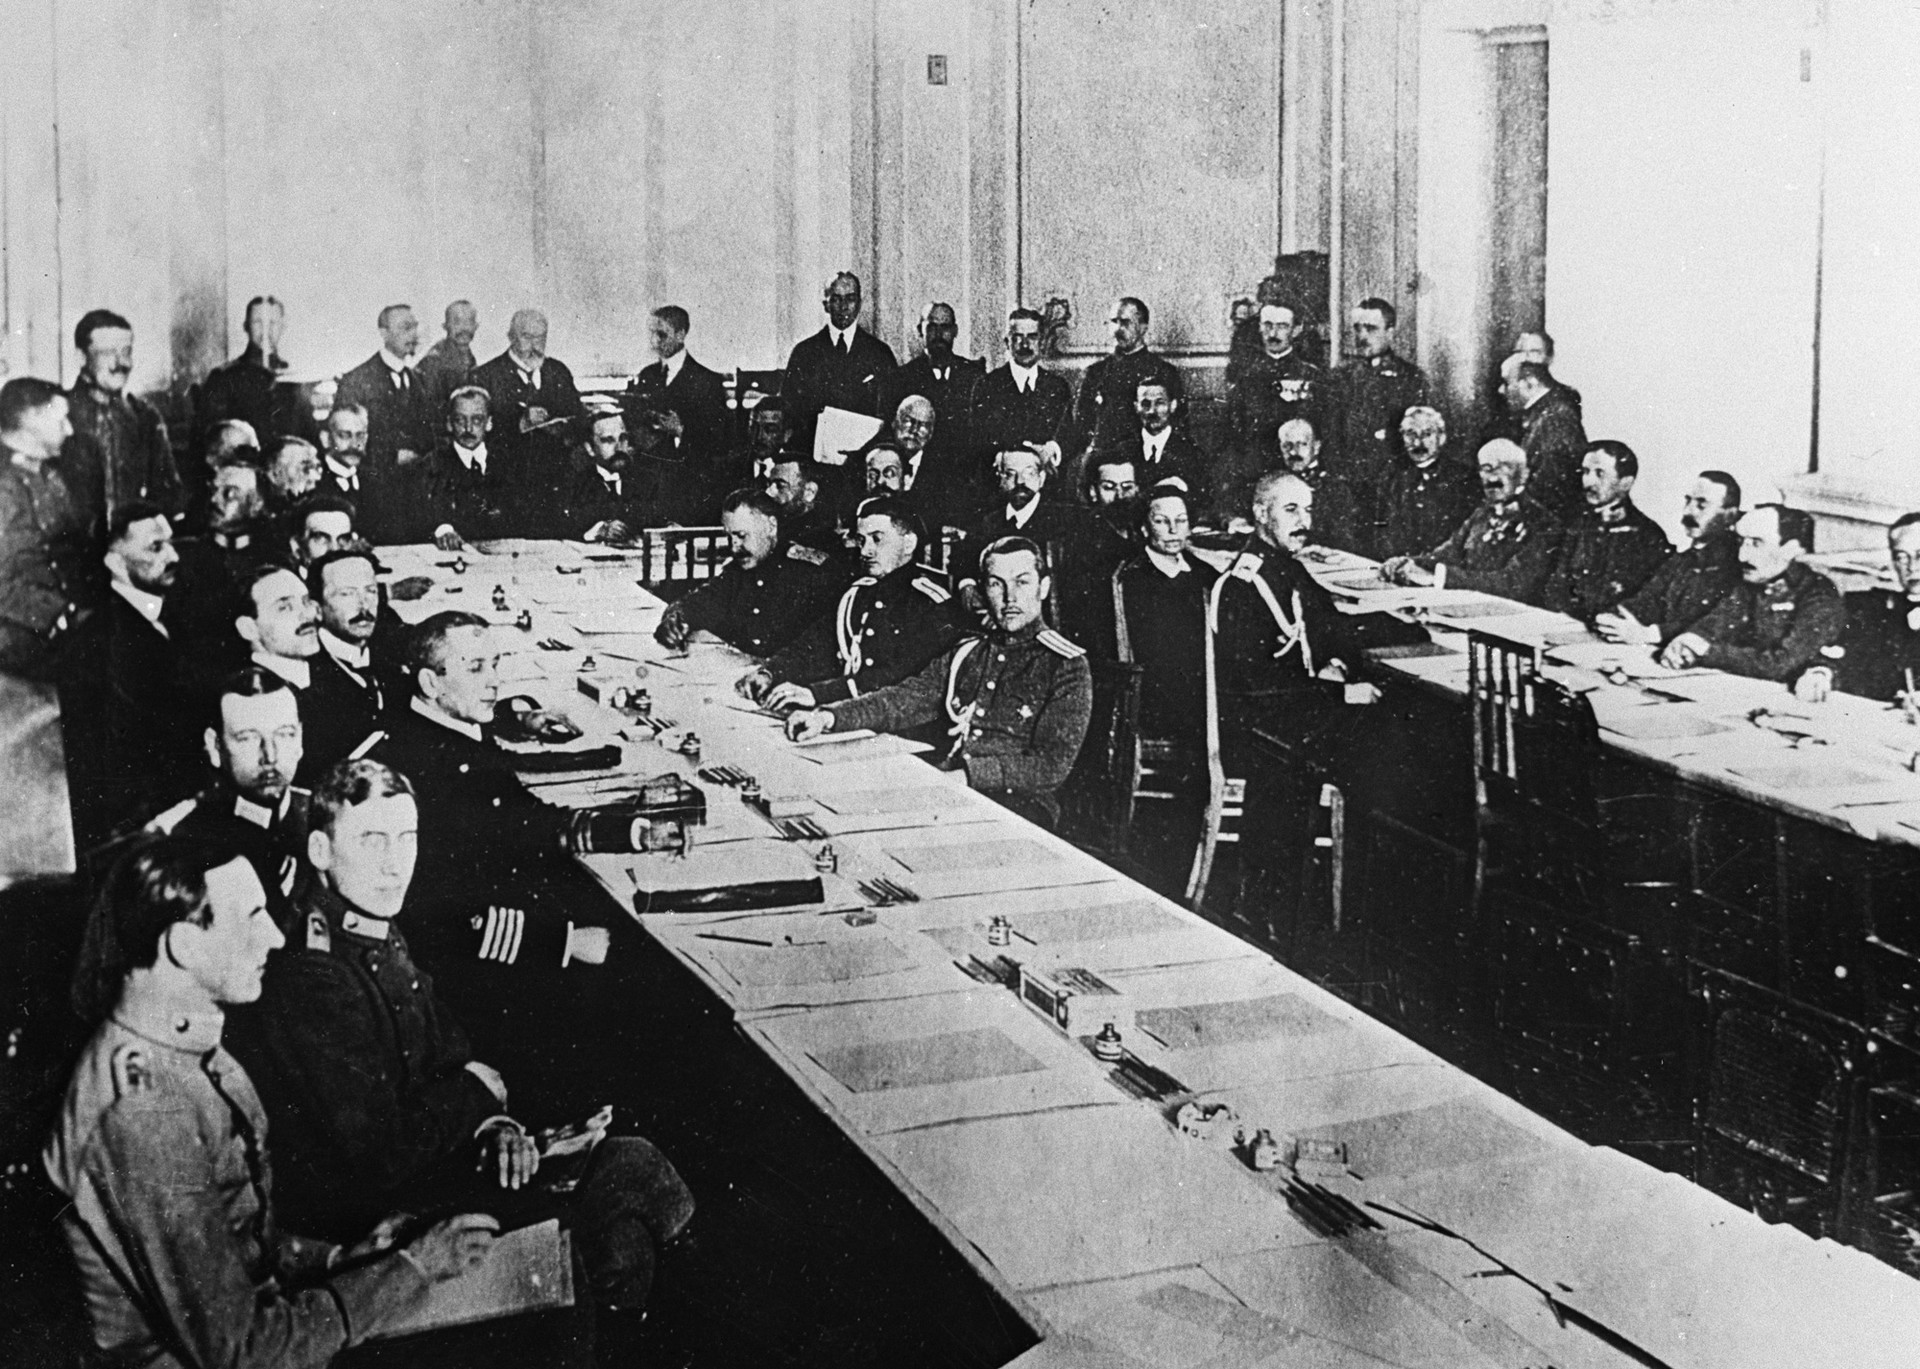 Un encuentro durante la conferencia de paz en la que se firmó el Tratado de Brest-Litovsk, el 3 de marzo de 1918